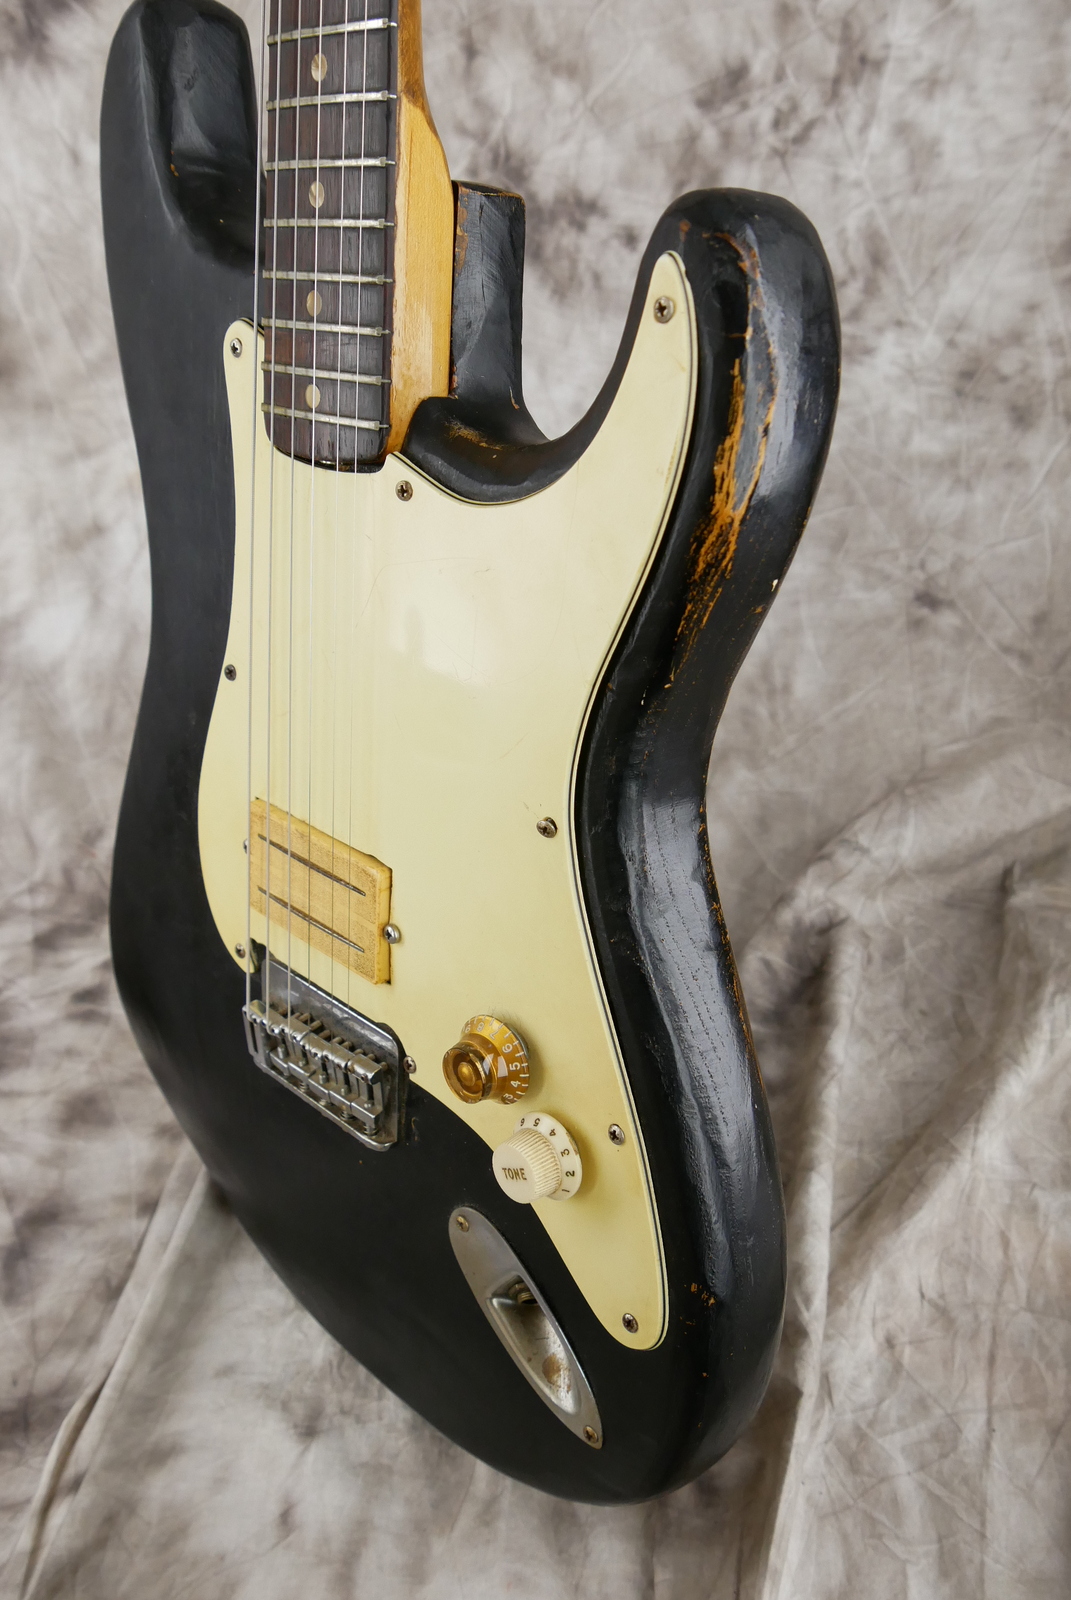 img/vintage/5388/Fender_Stratocaster_one_humbucker_tinkered_black_1971_73-006.JPG